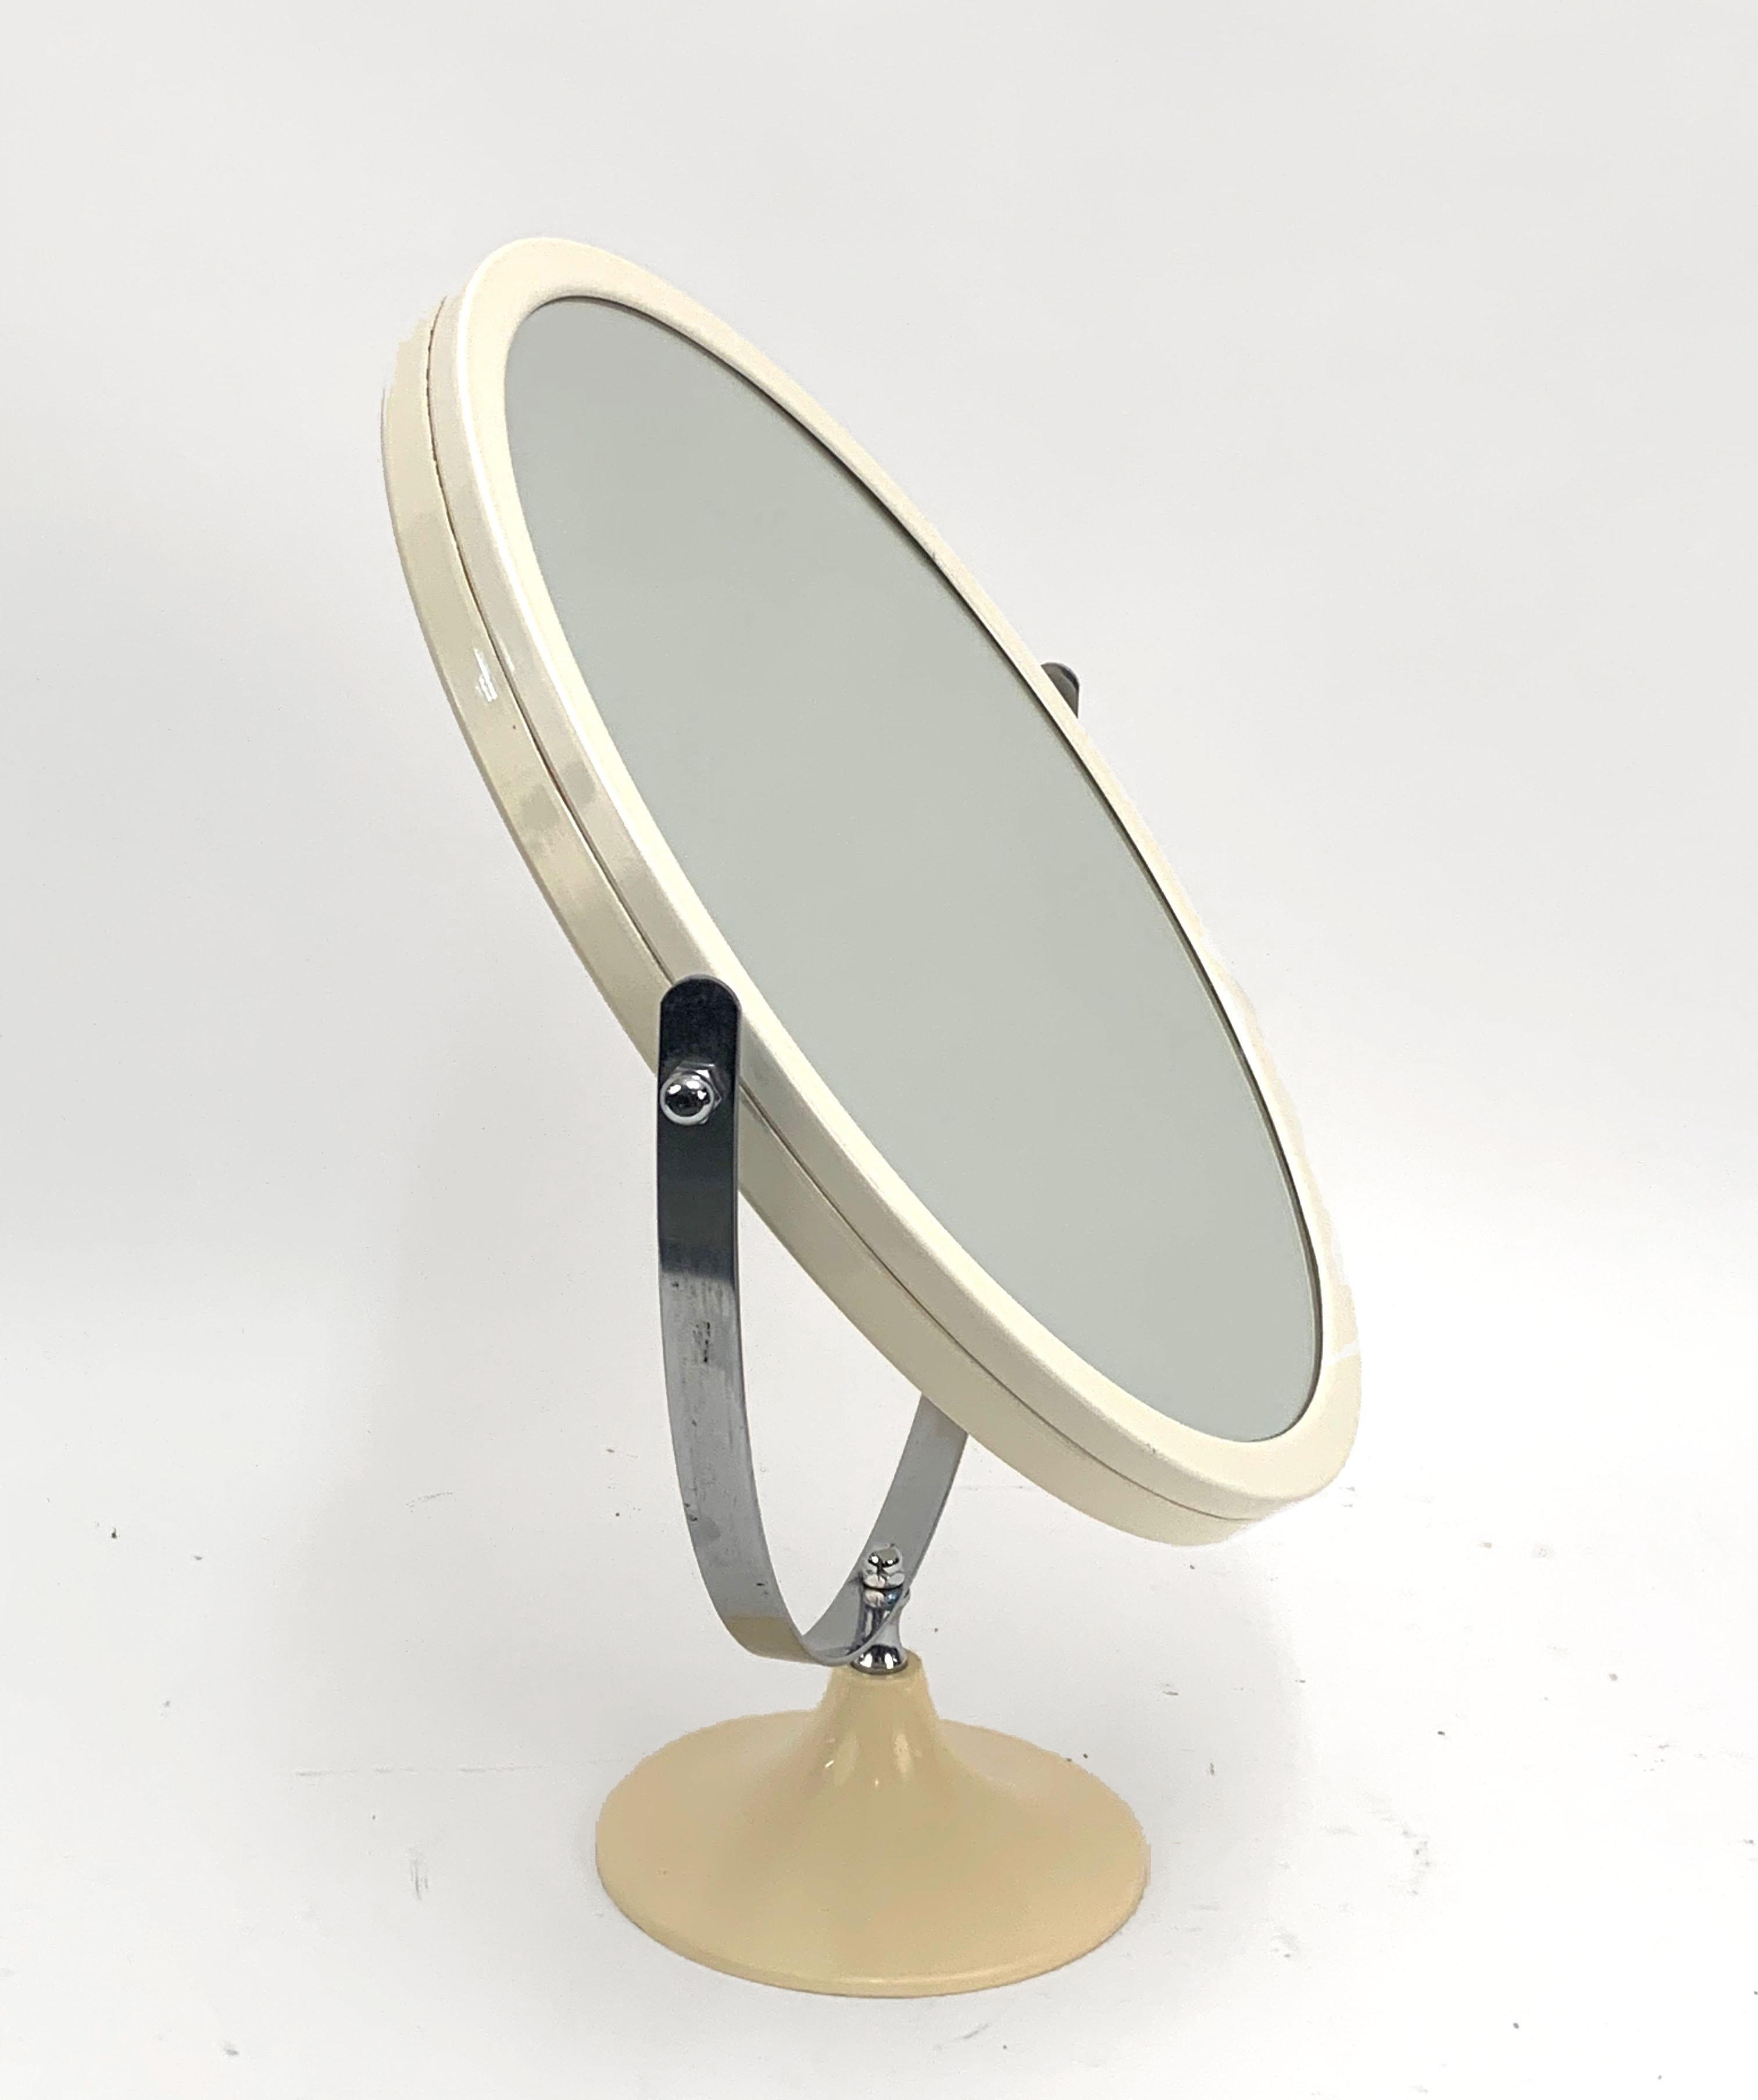 Wunderschöner runder Tischspiegel aus Metall und weißem Kunststoff aus der Jahrhundertmitte. Dieser tolle Artikel wurde in den 1980er Jahren in Italien hergestellt.

Dieses überraschende Stück besteht aus einem drehbaren weißen Kunststoffspiegel